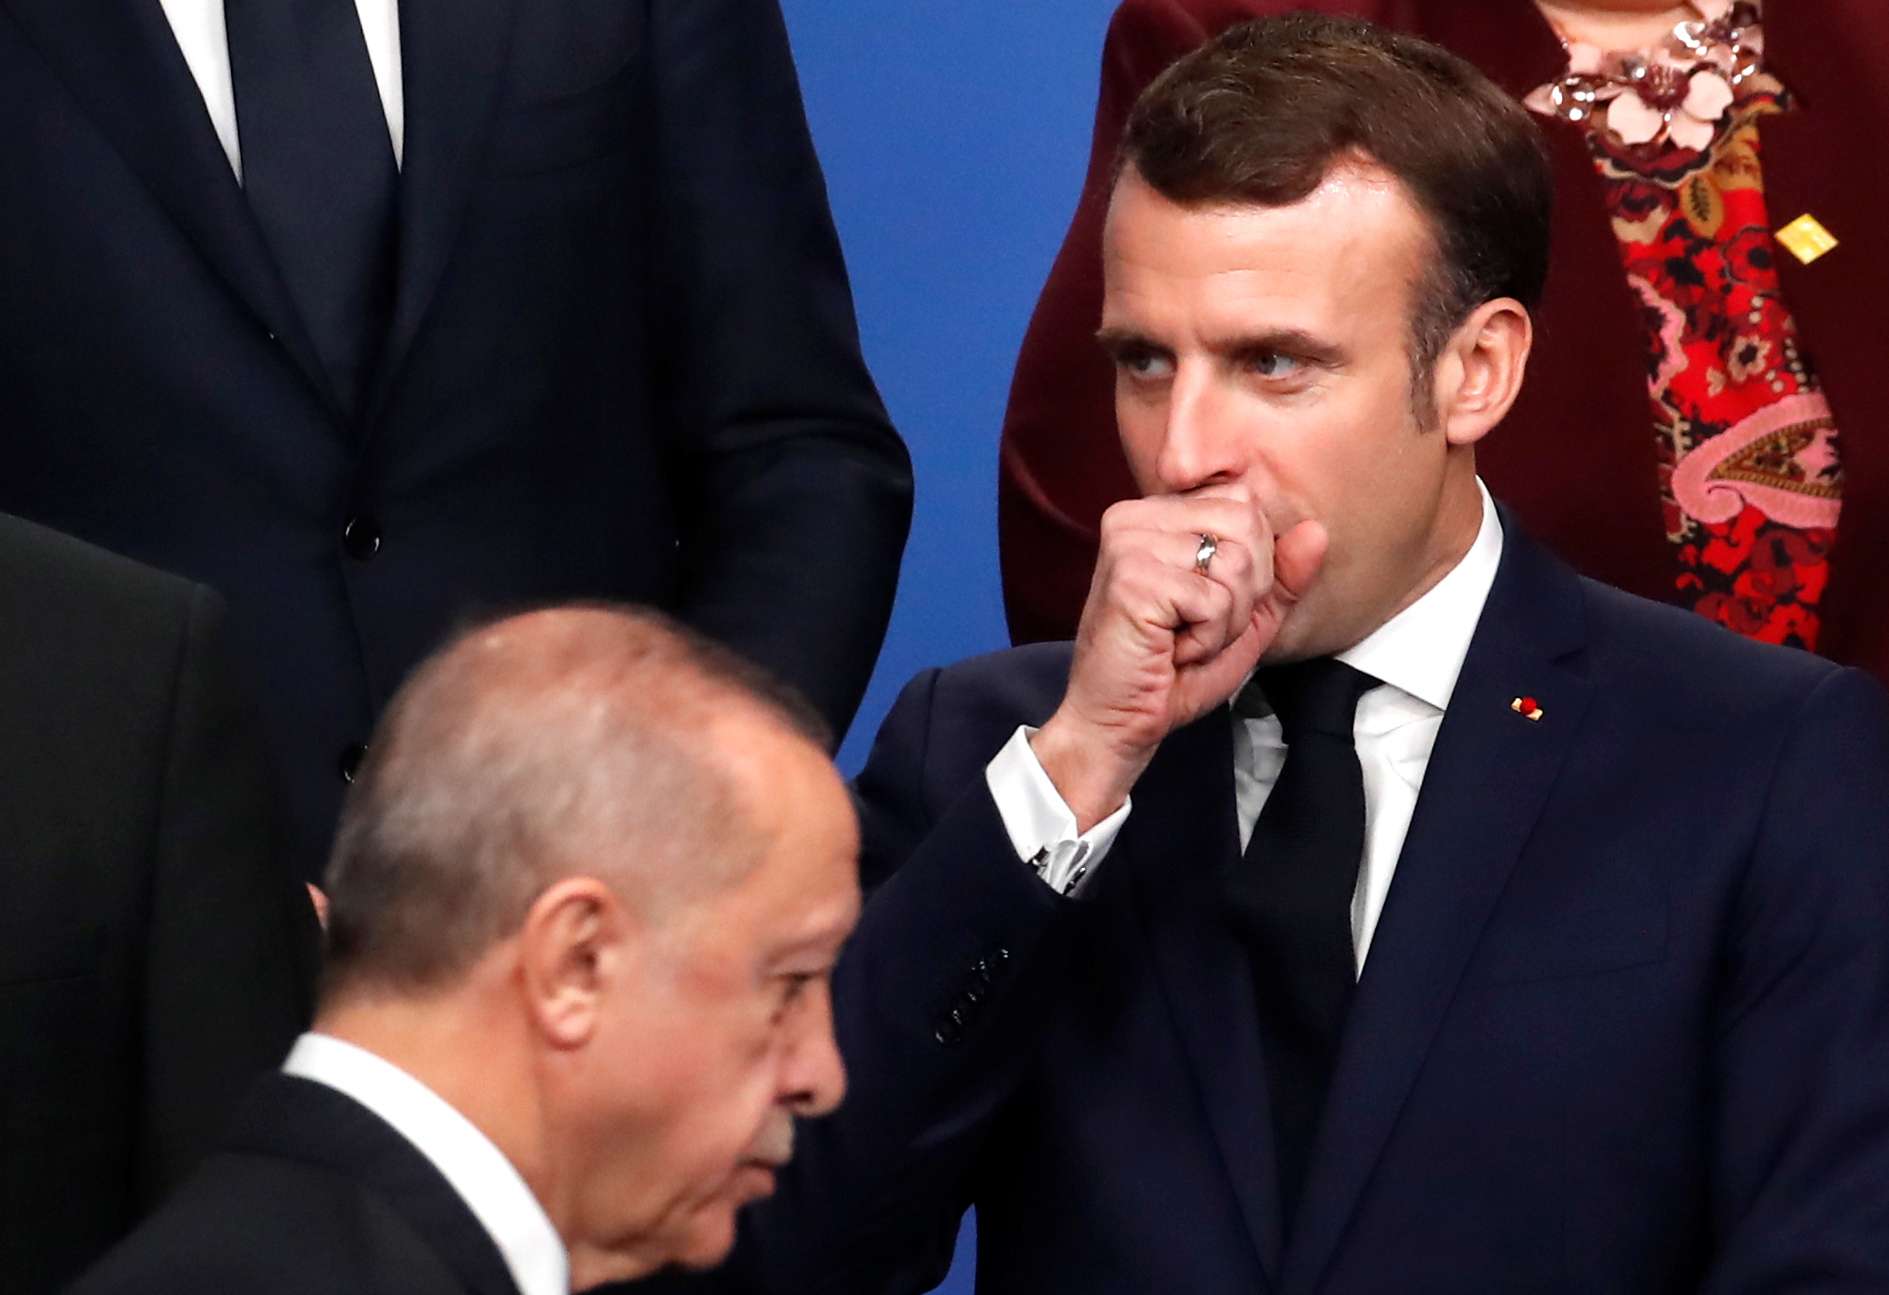 الرئيسان الفرنسي امانويل ماكرون والتركي رجب طيب أردوغان